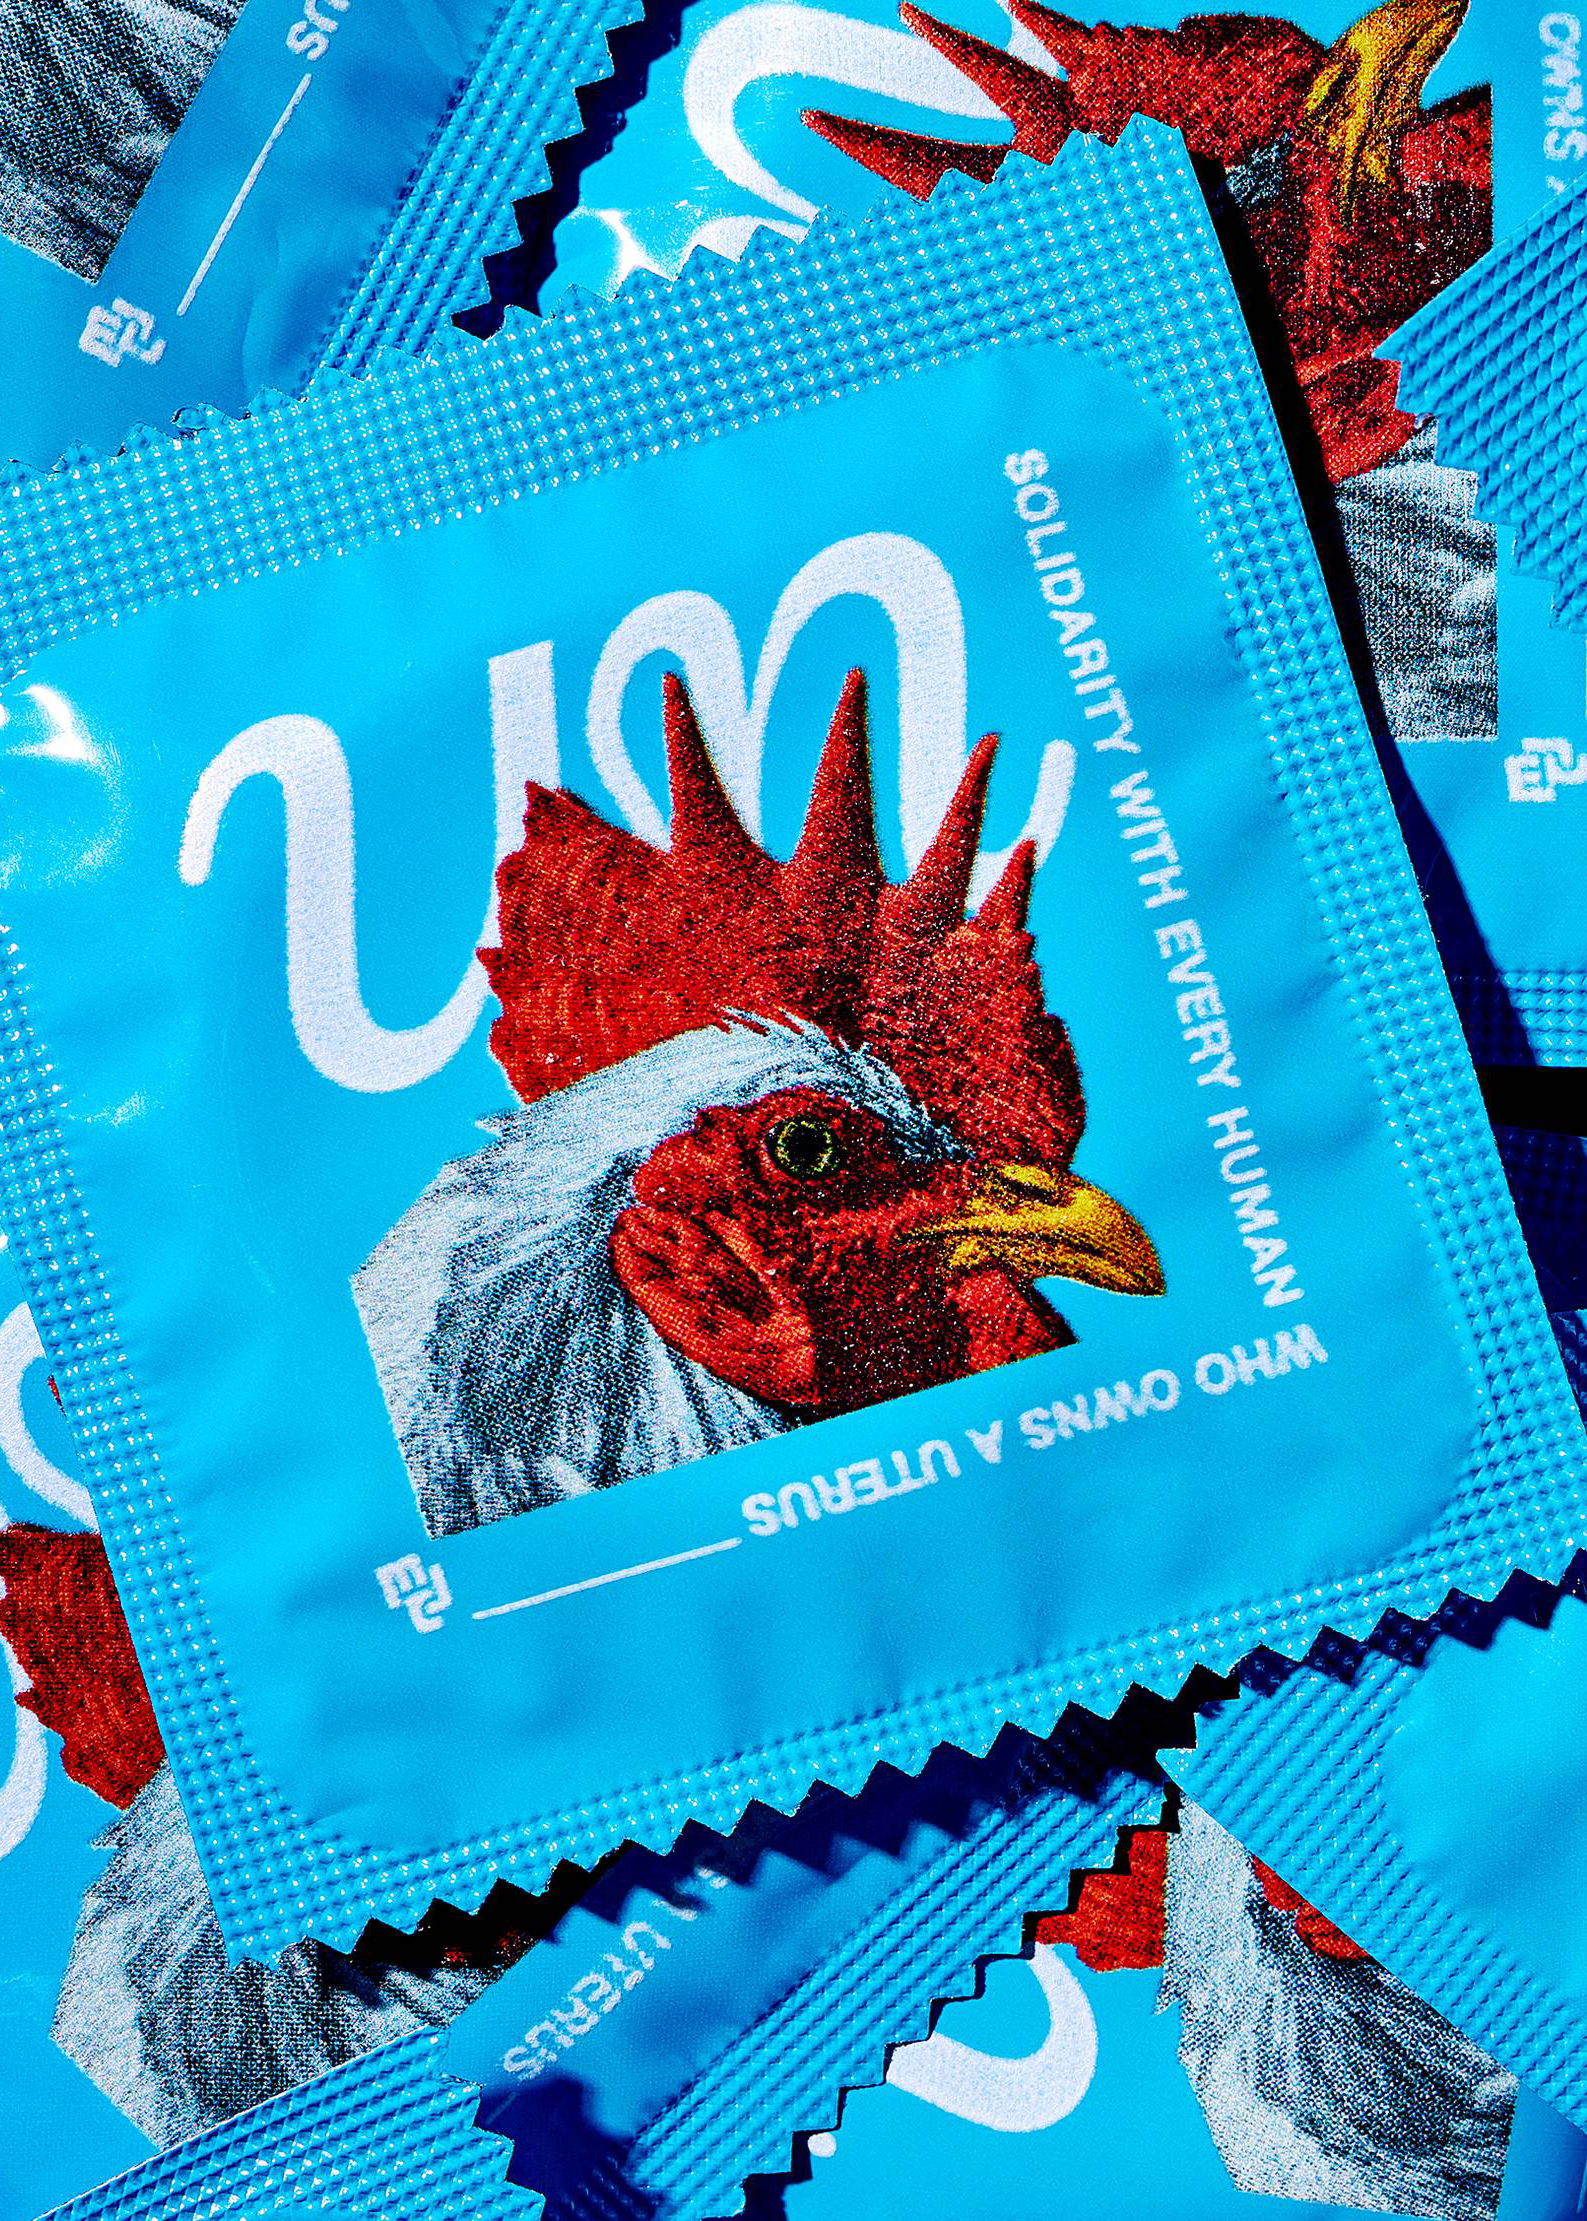 Condom packaging detail